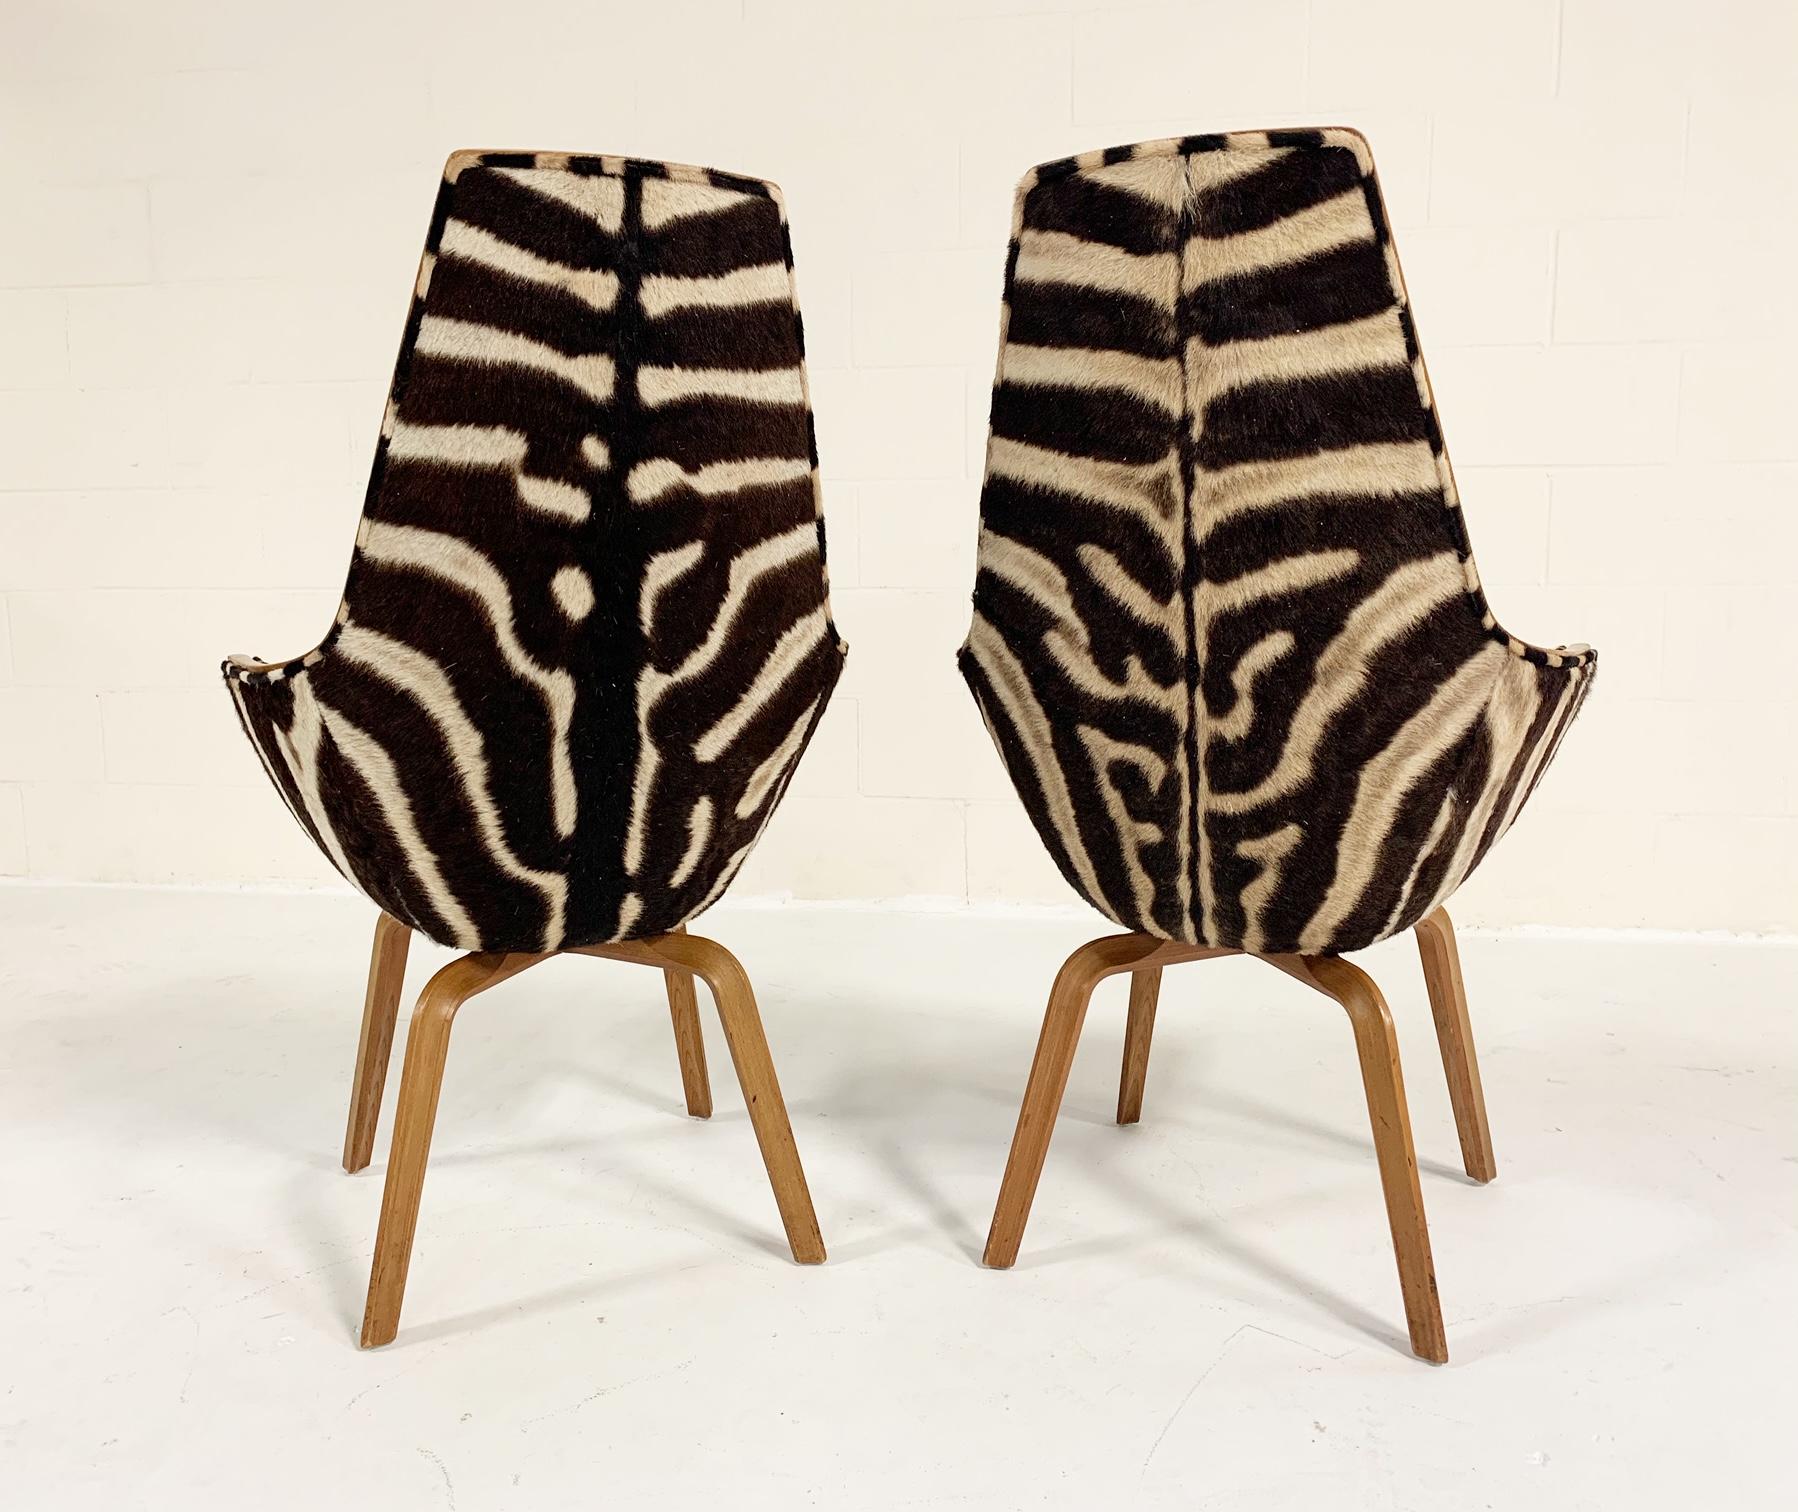 Rare Arne Jacobsen for Fritz Hansen Giraffe Chairs Restored in Zebra Hide, Pair 1